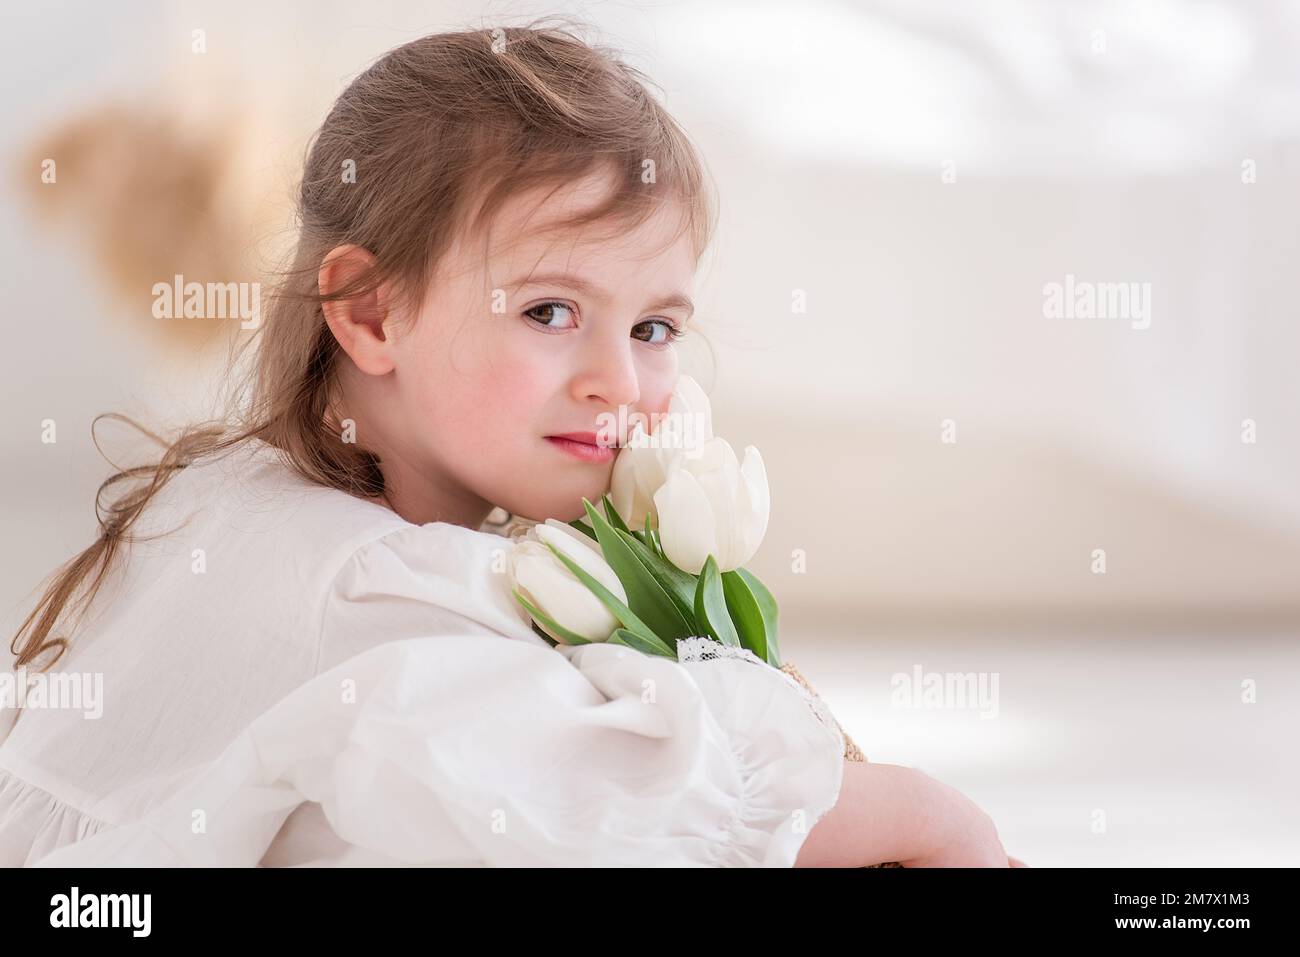 Primo piano ritratto di una bambina in abito bianco, abito da notte. Il bambino abbraccia un bouquet di tulipani bianchi freschi e delicati. Regalo per le vacanze, il Foto Stock